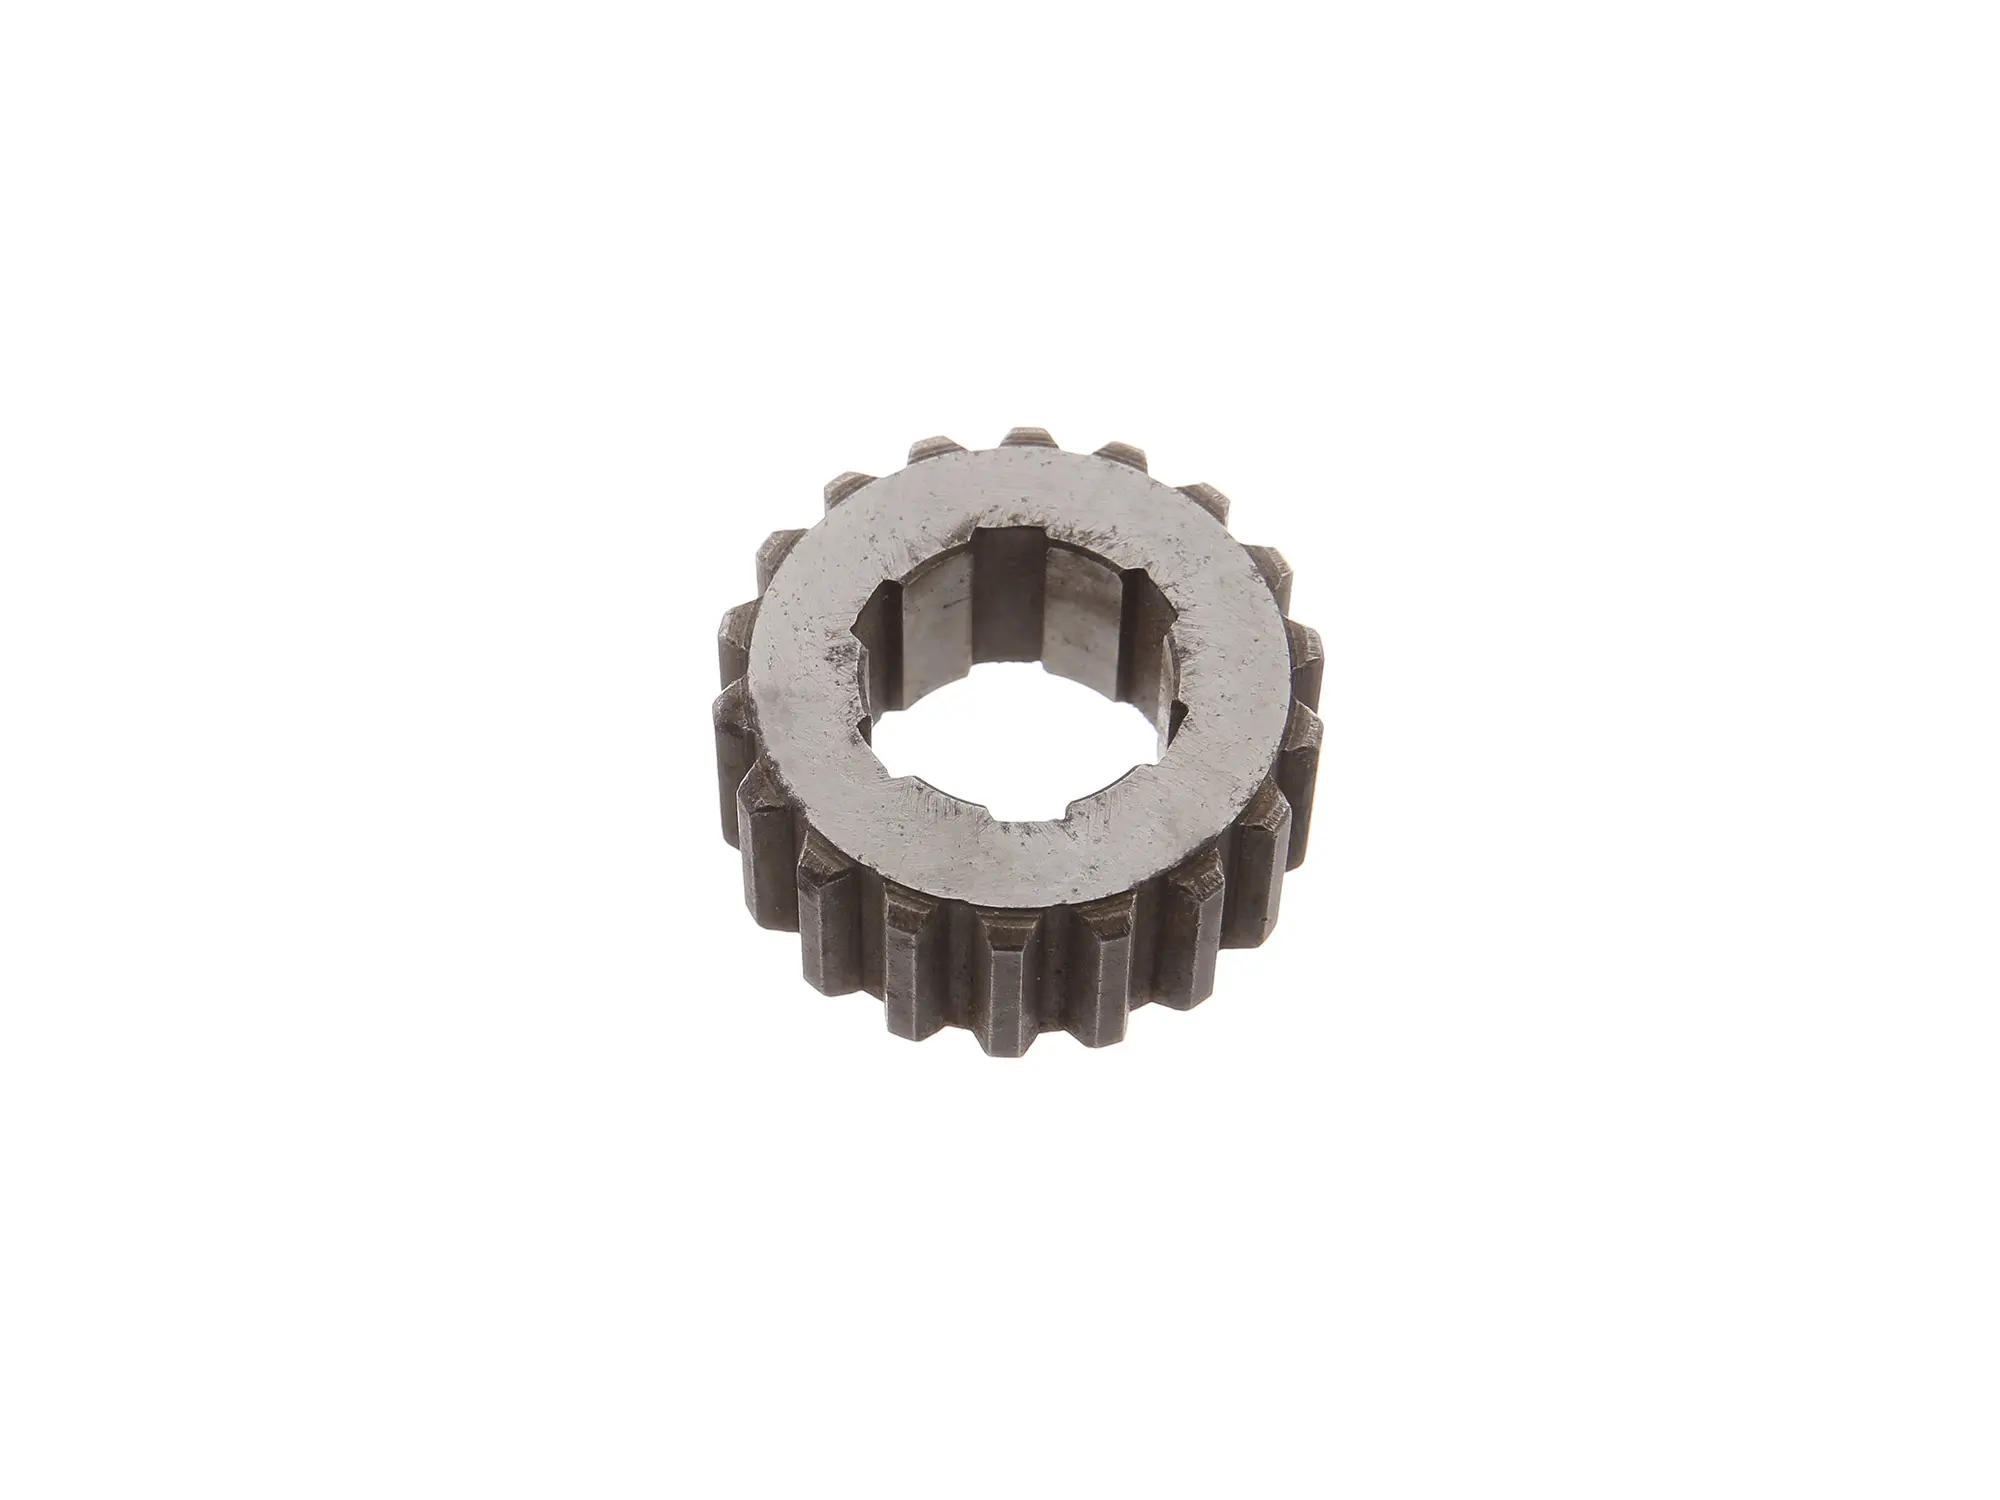 Zwischenstück für Zahnräder (Getriebe) passend für BK 350, Art.-Nr.: 10066777 - Bild 1